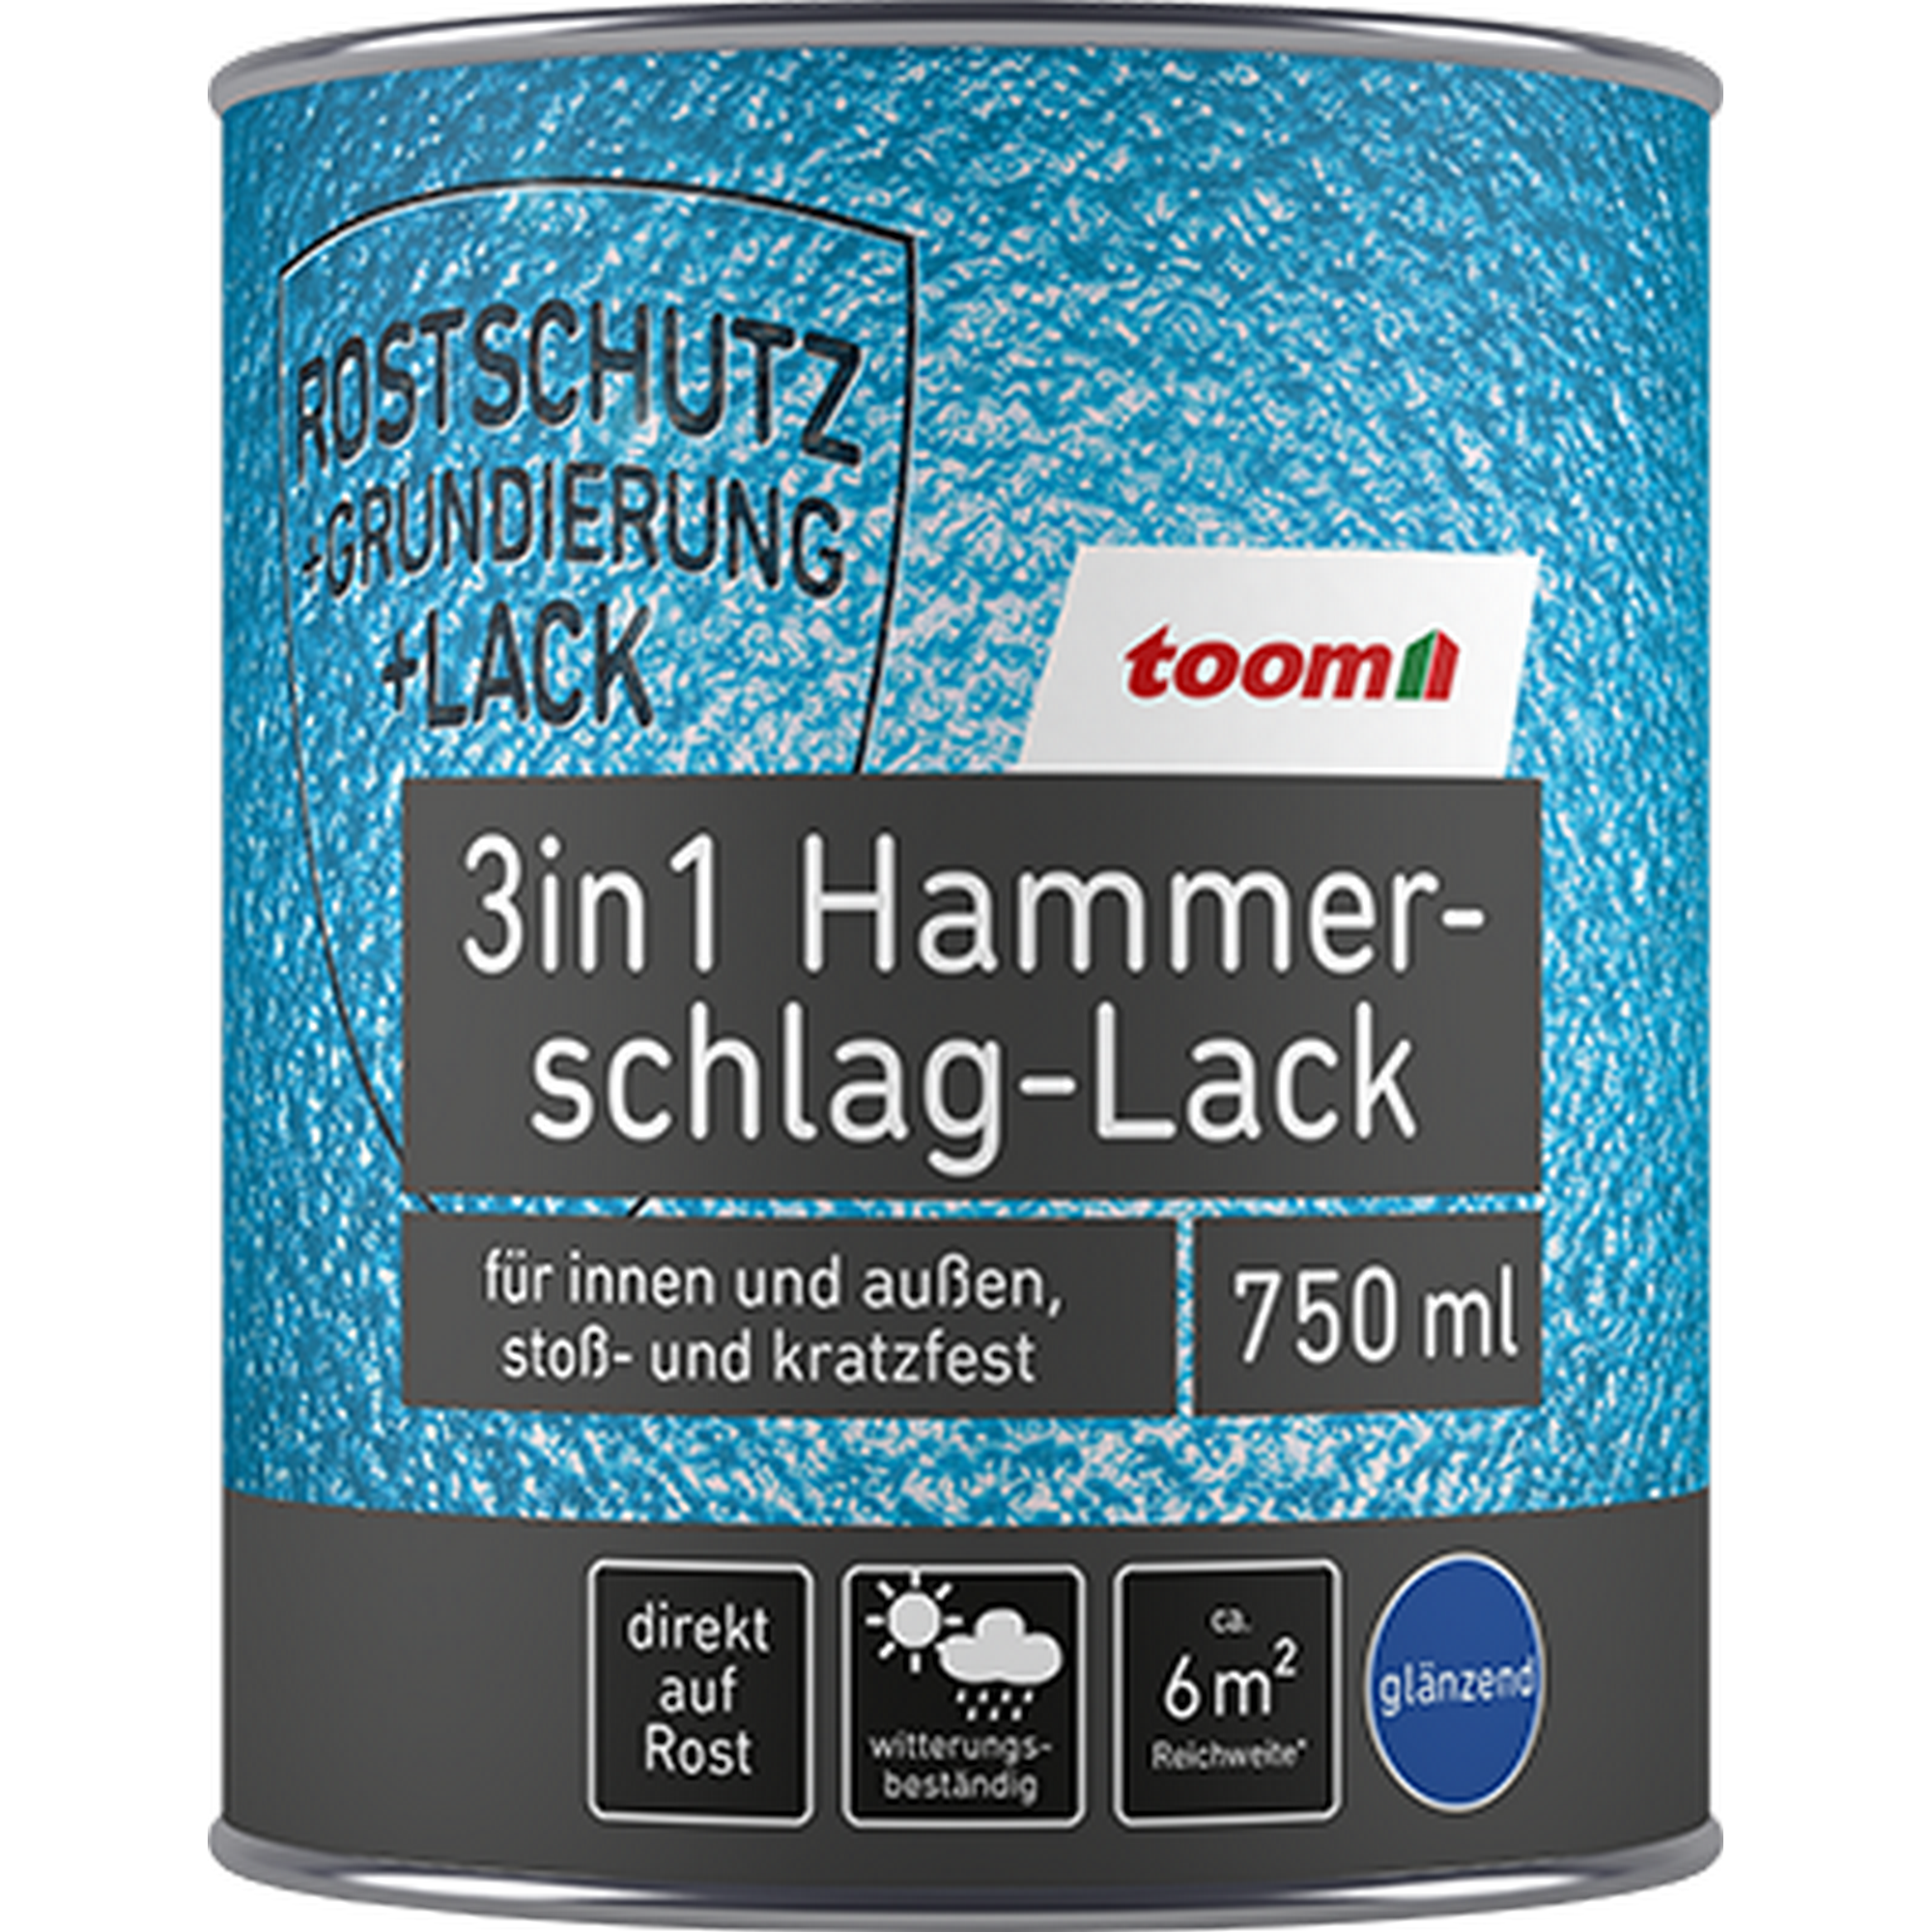 Hammerschlag-Lack dunkelblau glänzend 750 ml + product picture